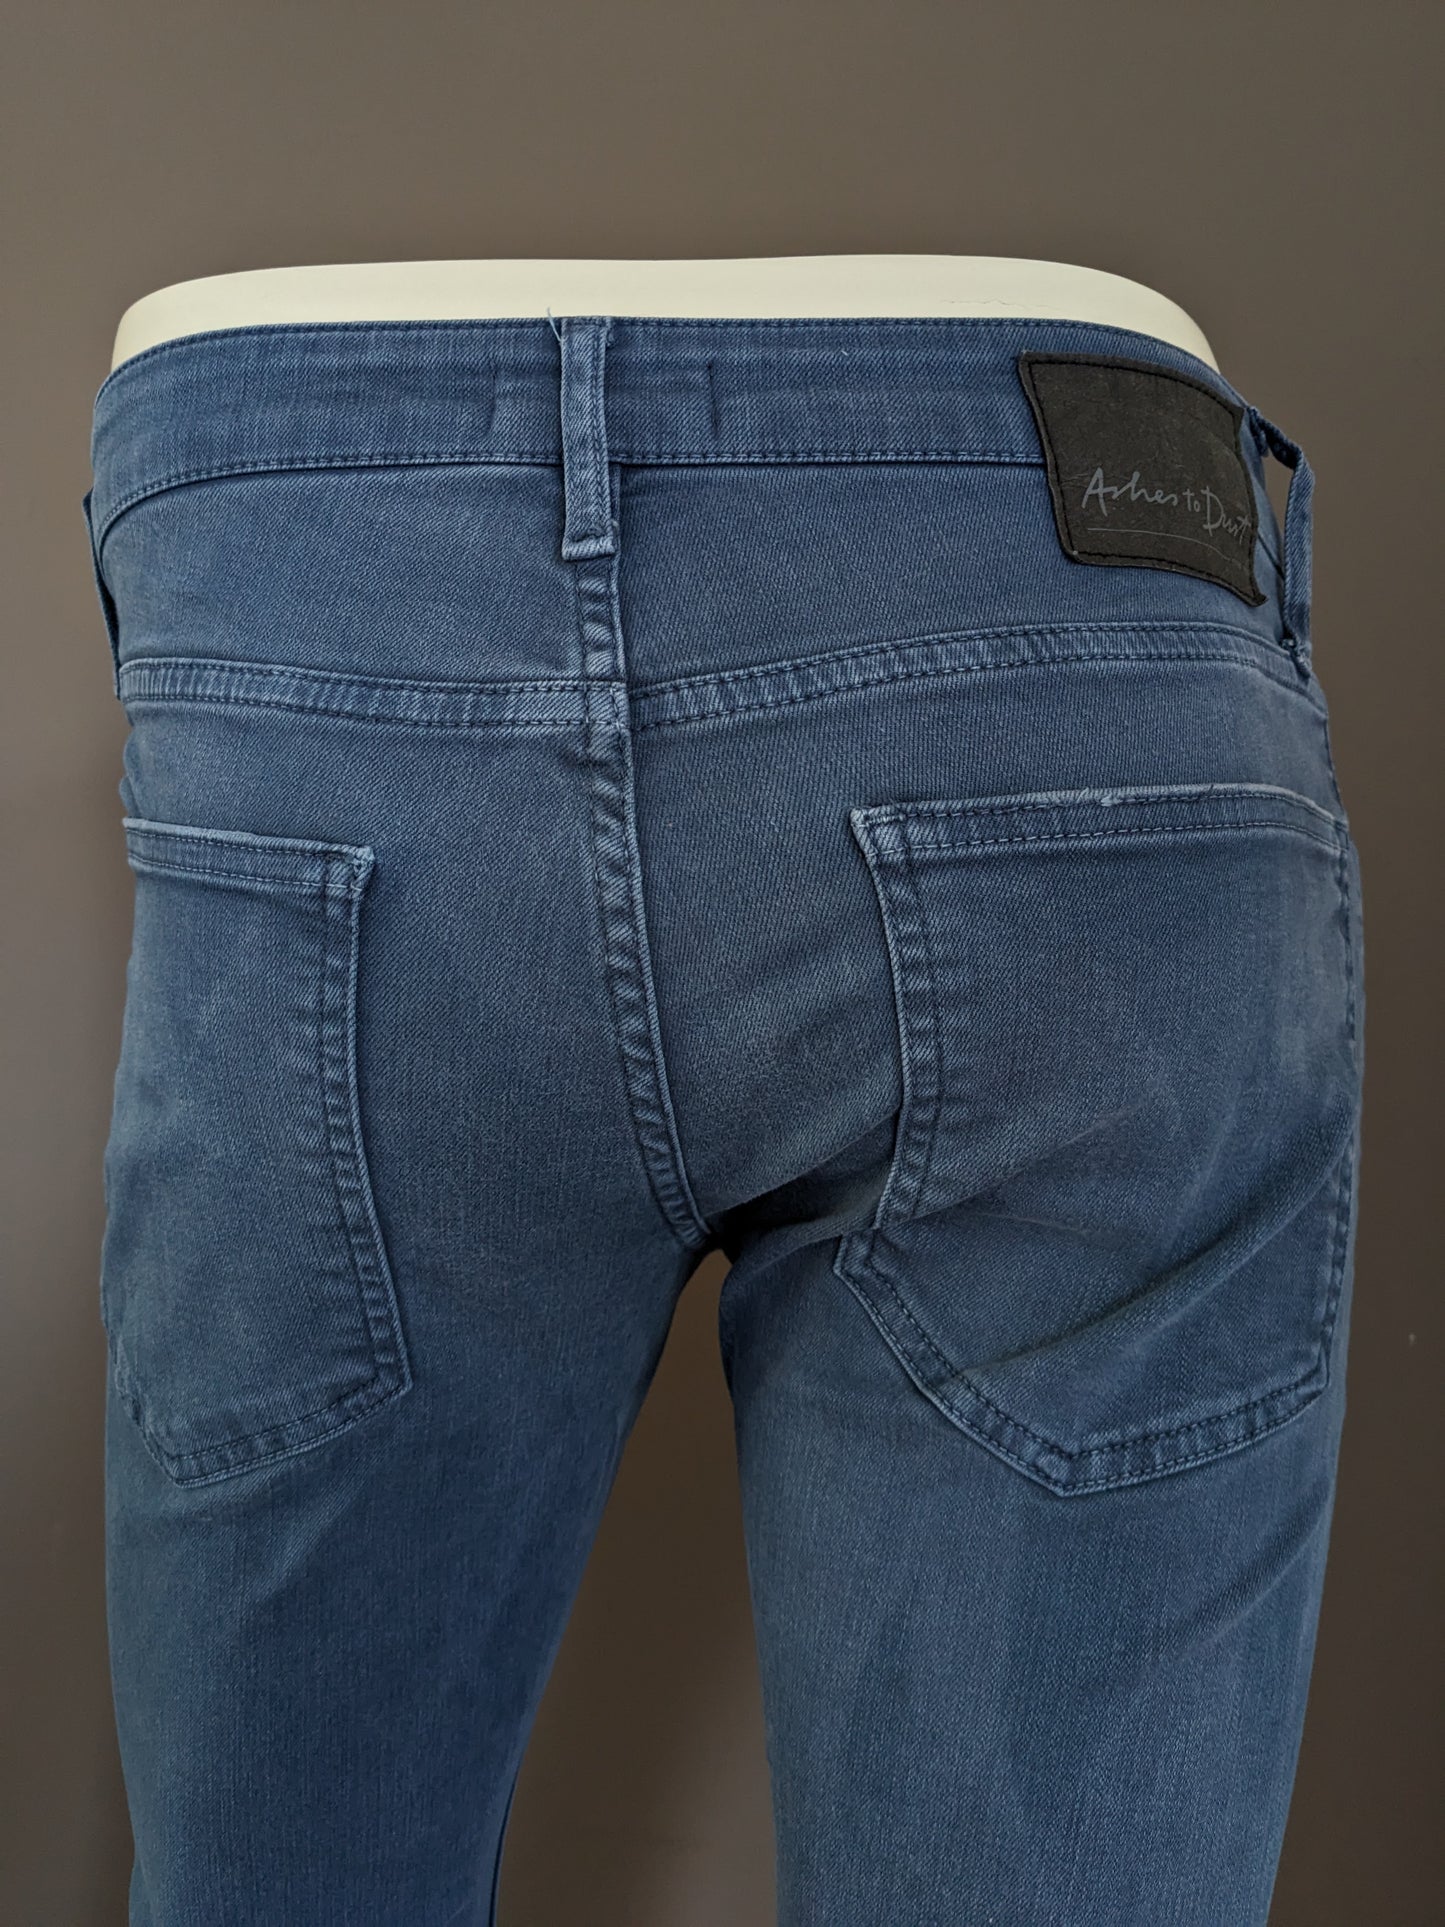 Cenizas a los jeans del polvo. Azul. Tamaño W30 - L26 estiramiento.